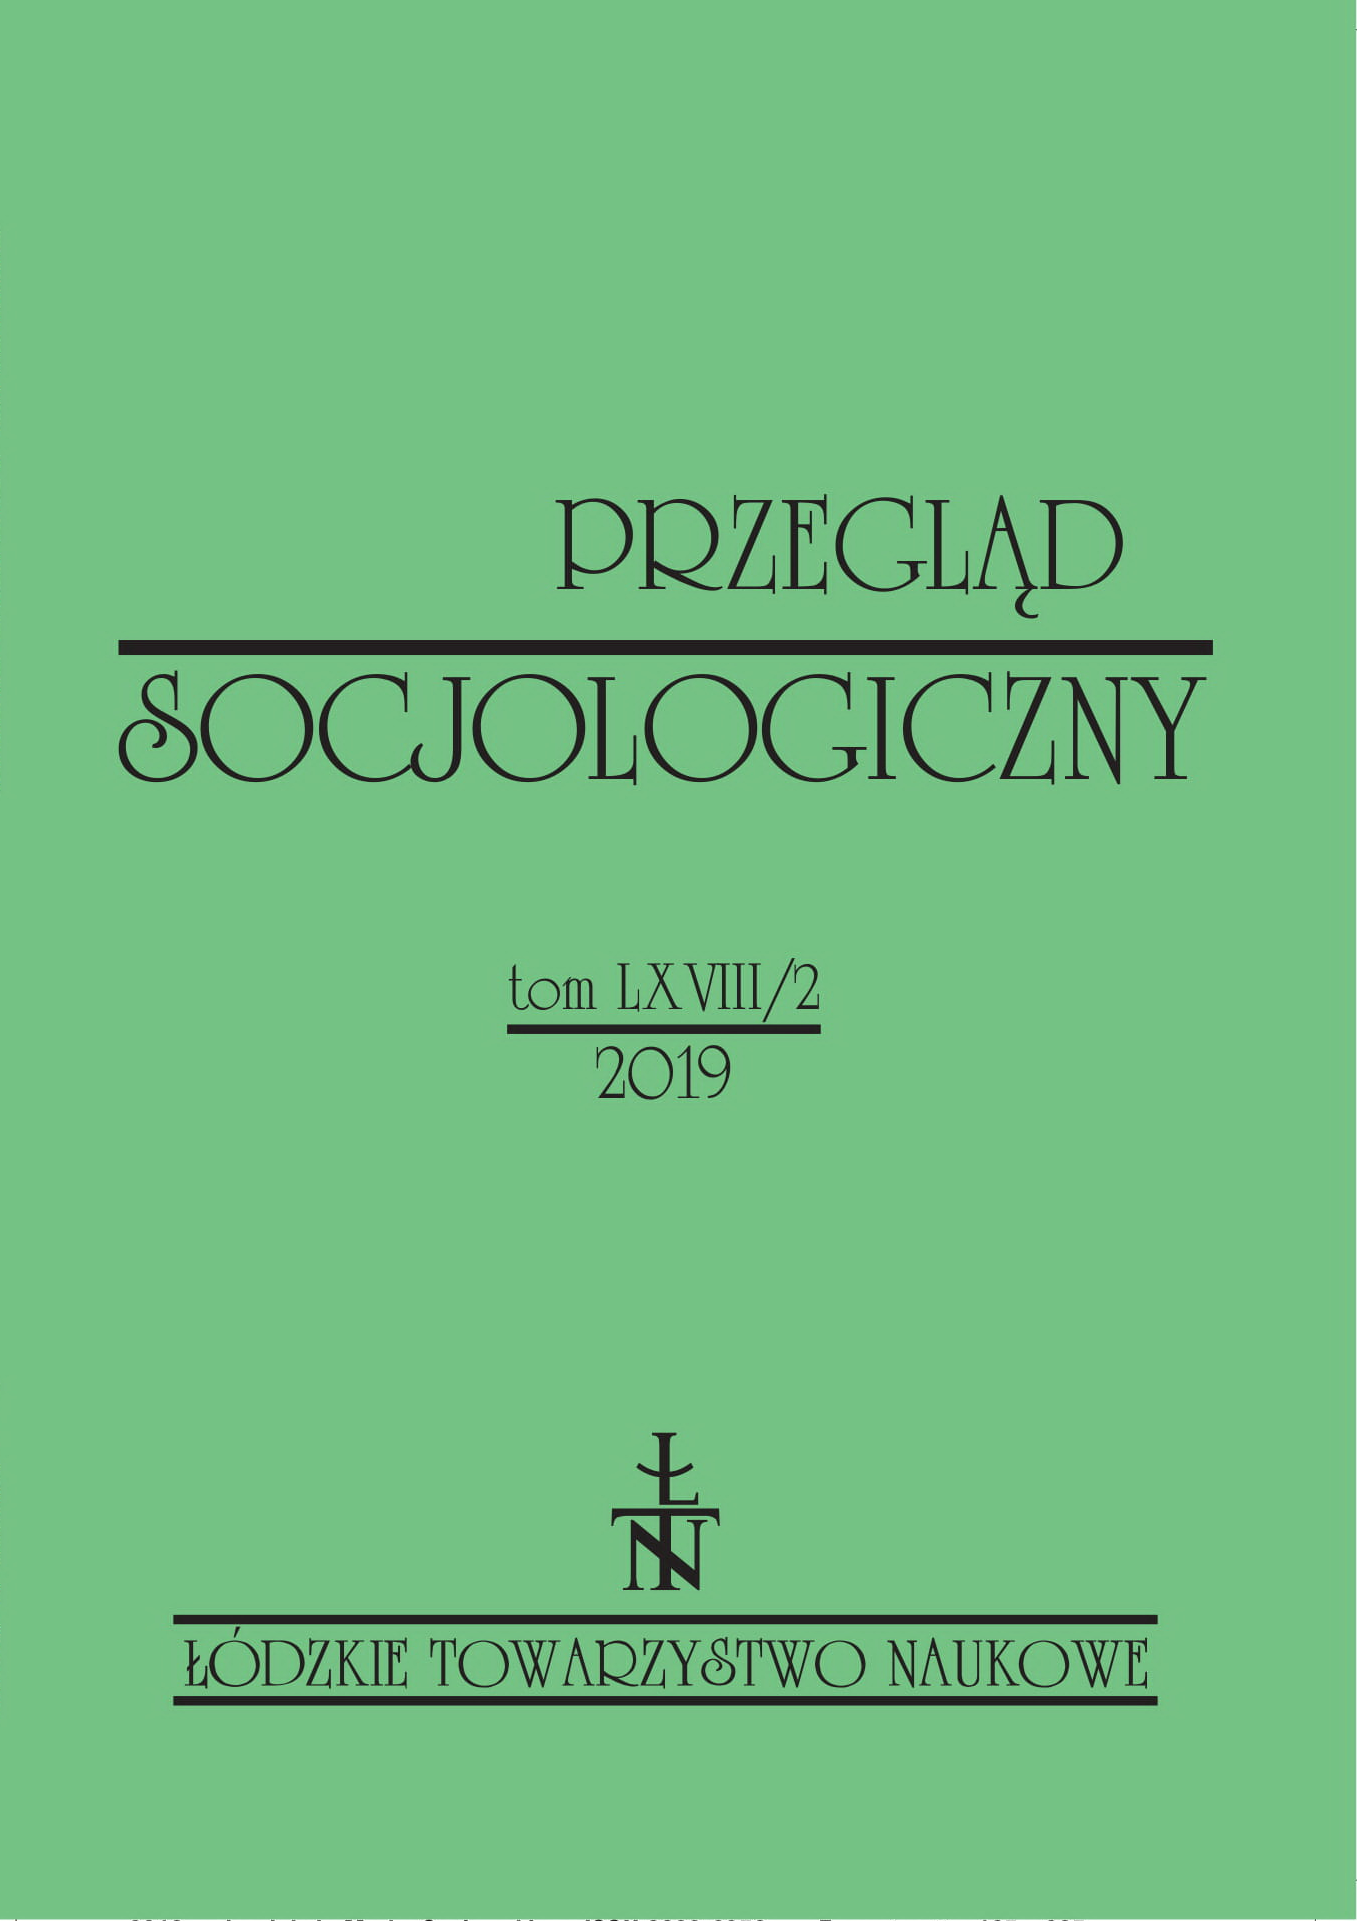 Nierówności w nauce i ich uwarunkowania: polskie (sub)pole filozofii prawa